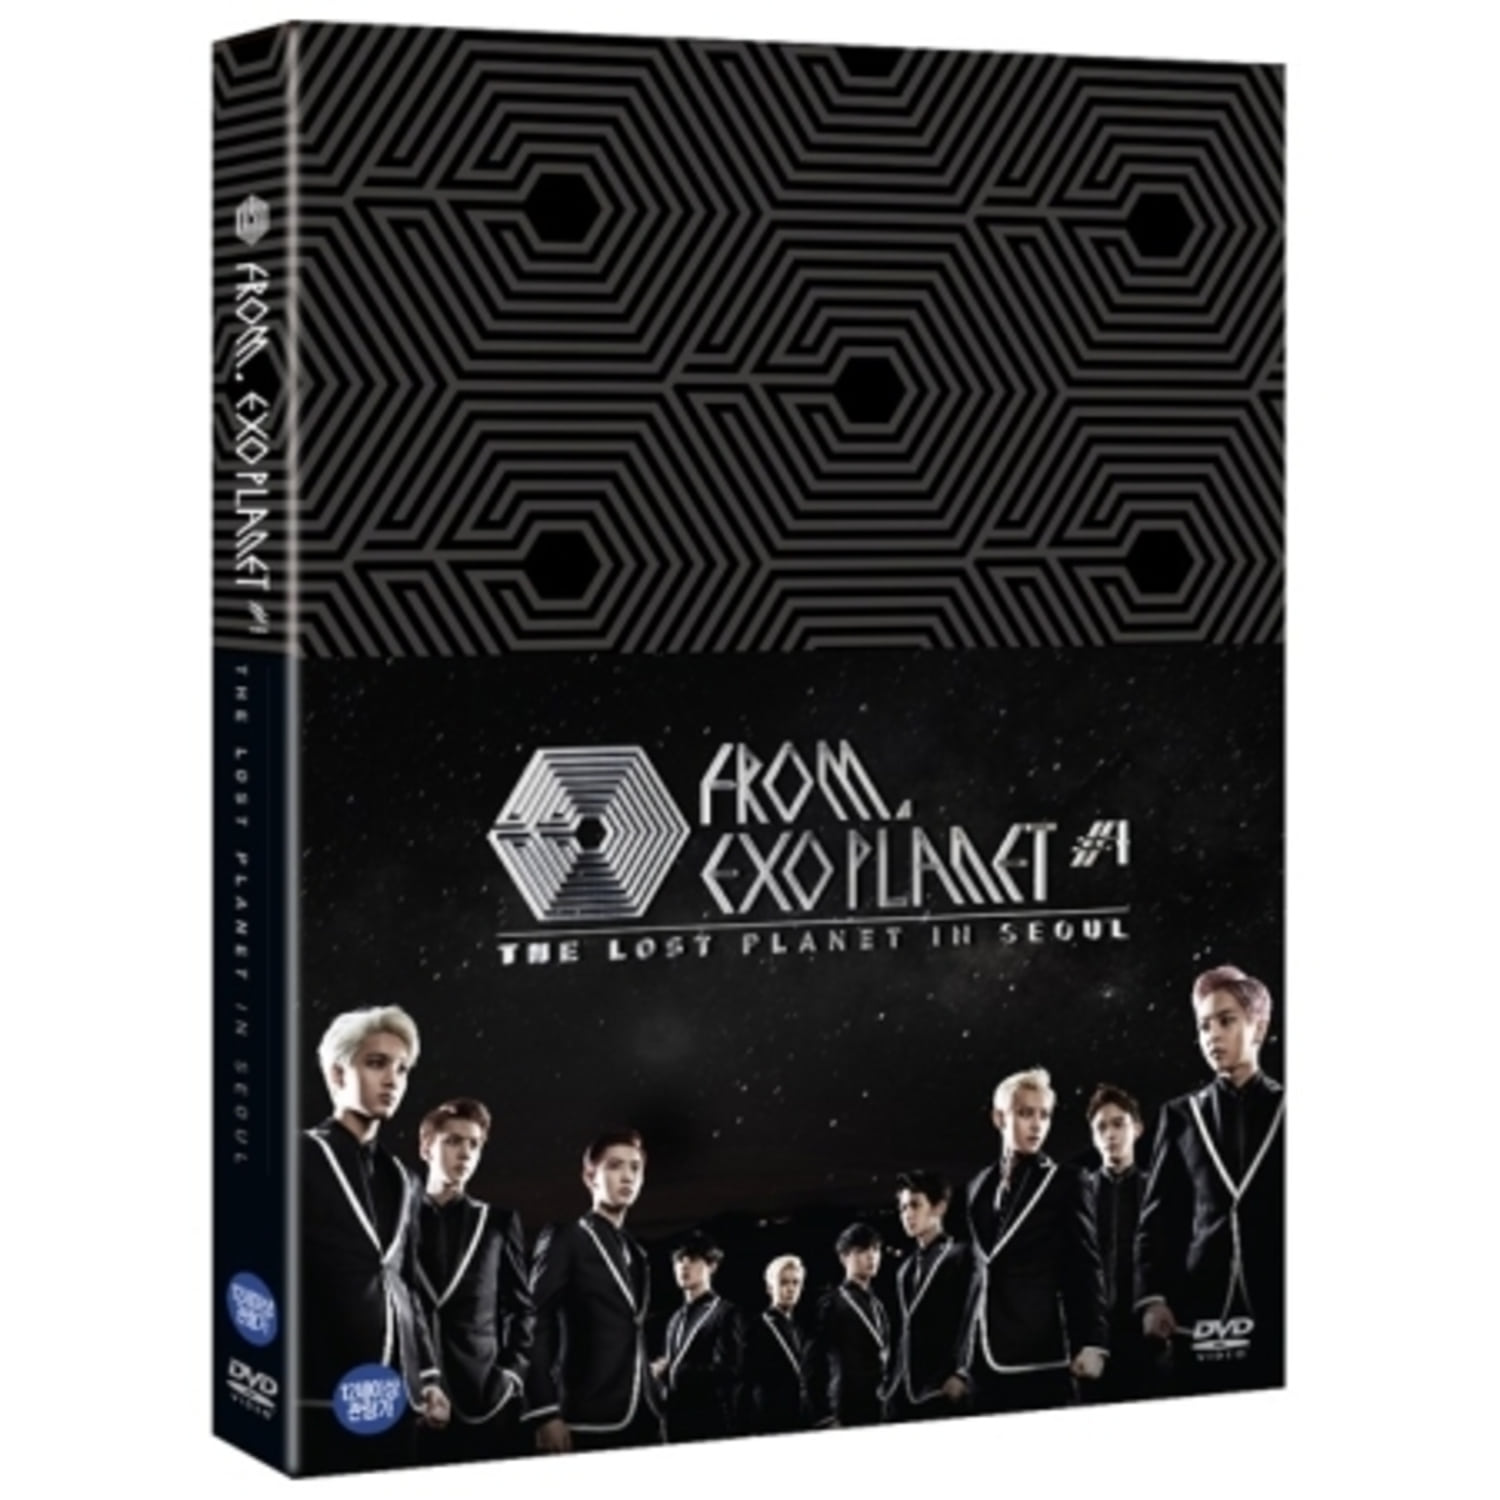 엑소 (EXO) - 엑소 프롬. 엑소플래닛 #1 - 더 로스트 플래닛 인 서울 DVD (3 DISC)